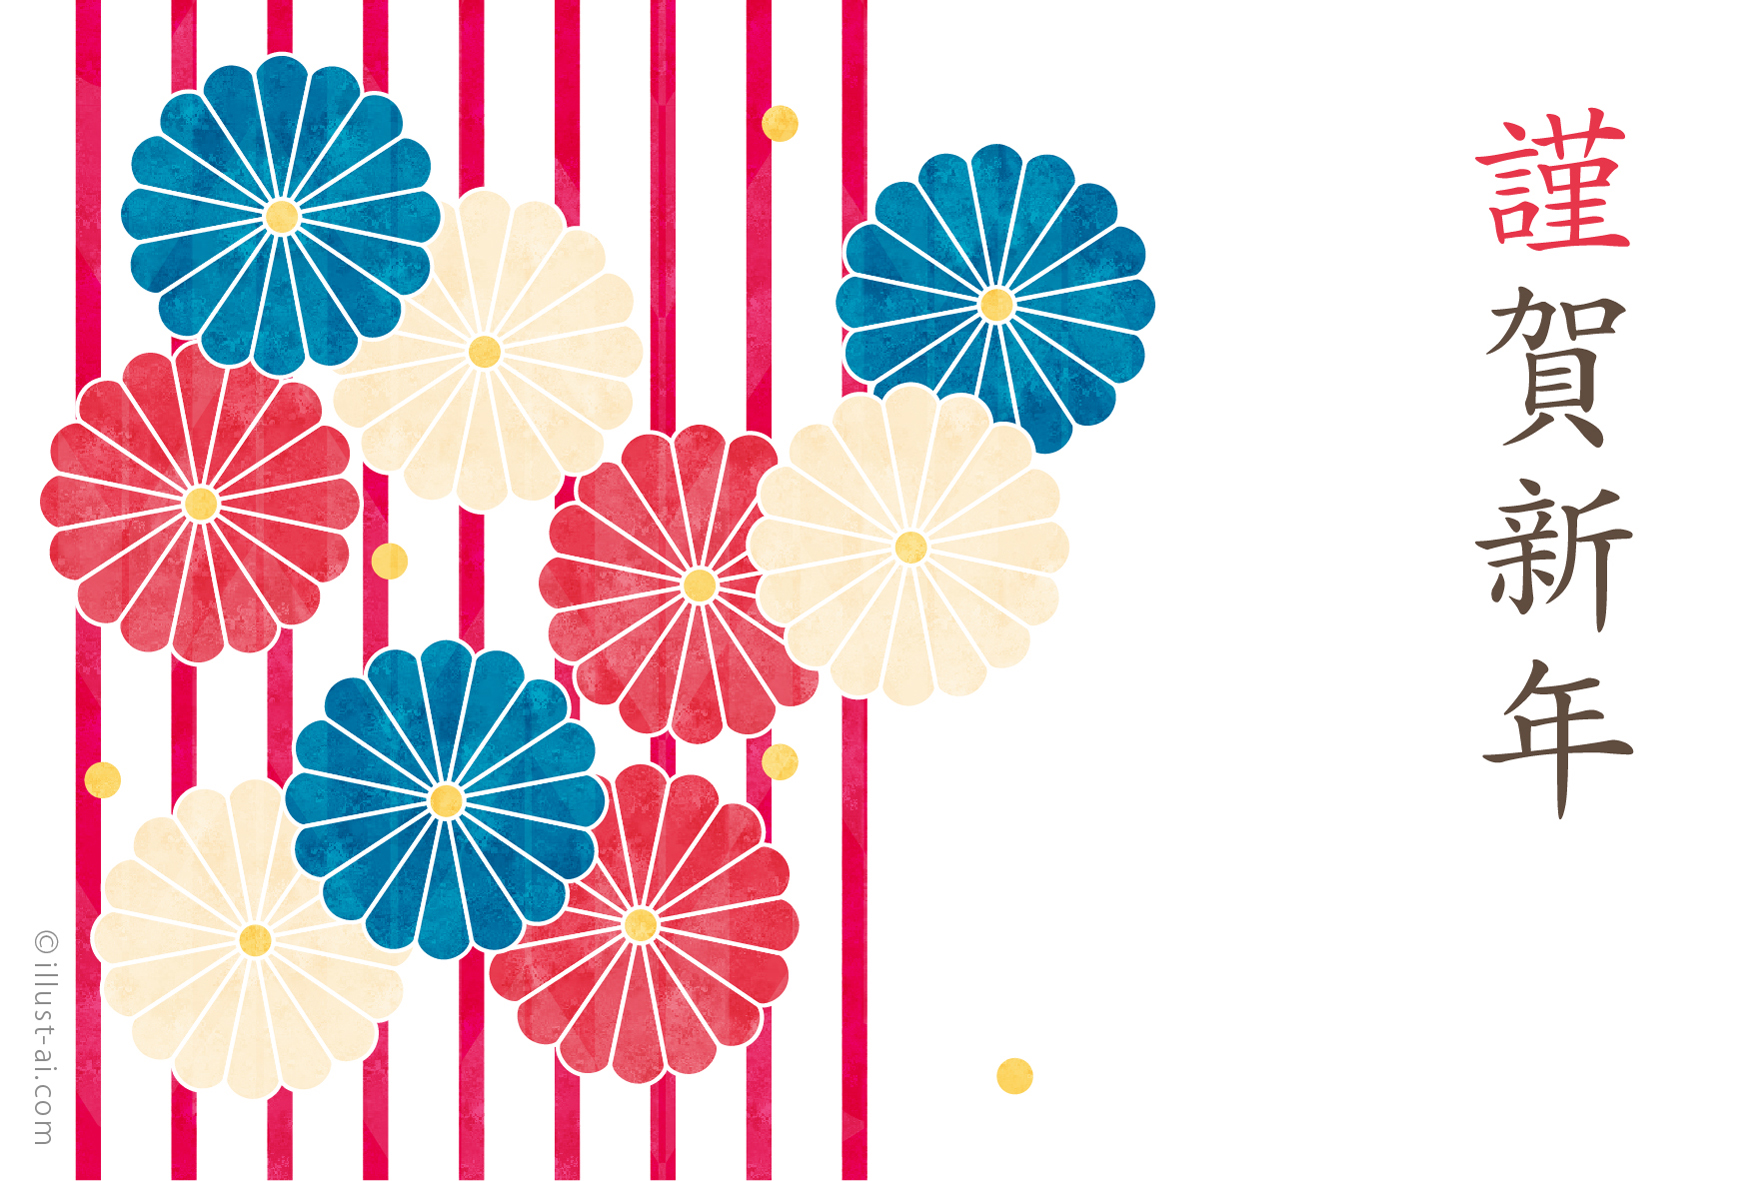 年賀状 子年 三色の菊の花とストライプ柄のデザイン 年賀状無料イラスト素材集